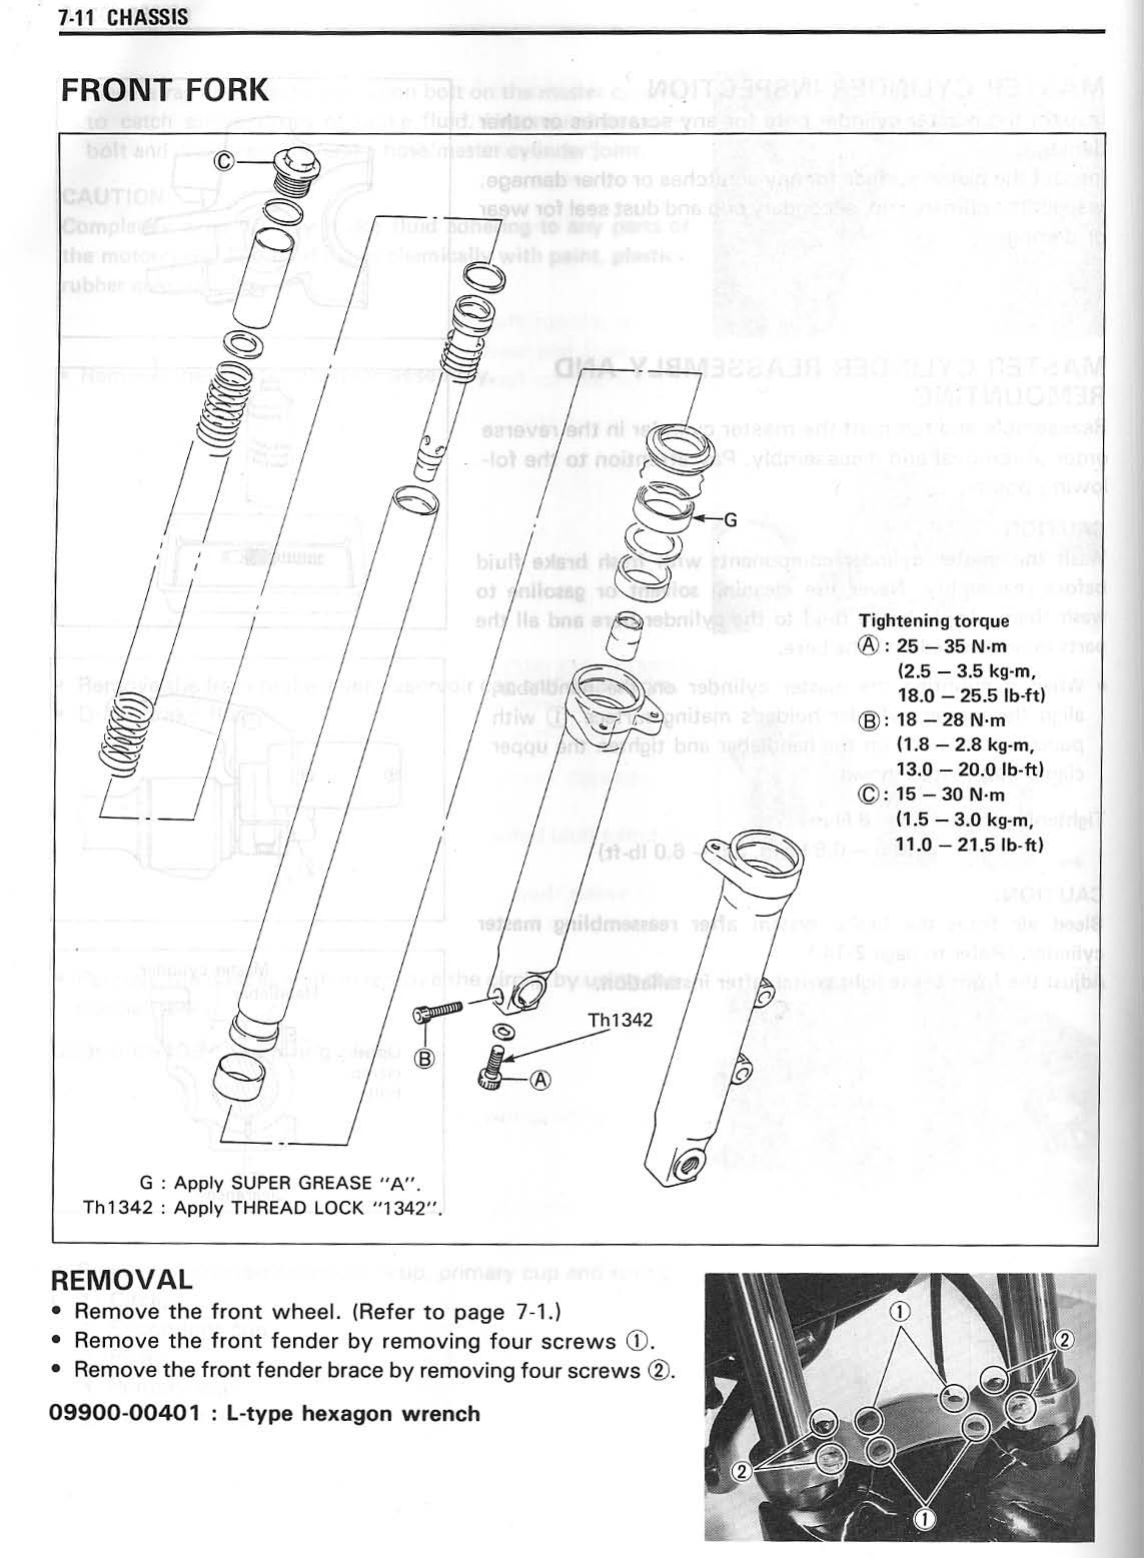 1989-1991 Suzuki Bandit GSF400 repair, service manual Preview image 4